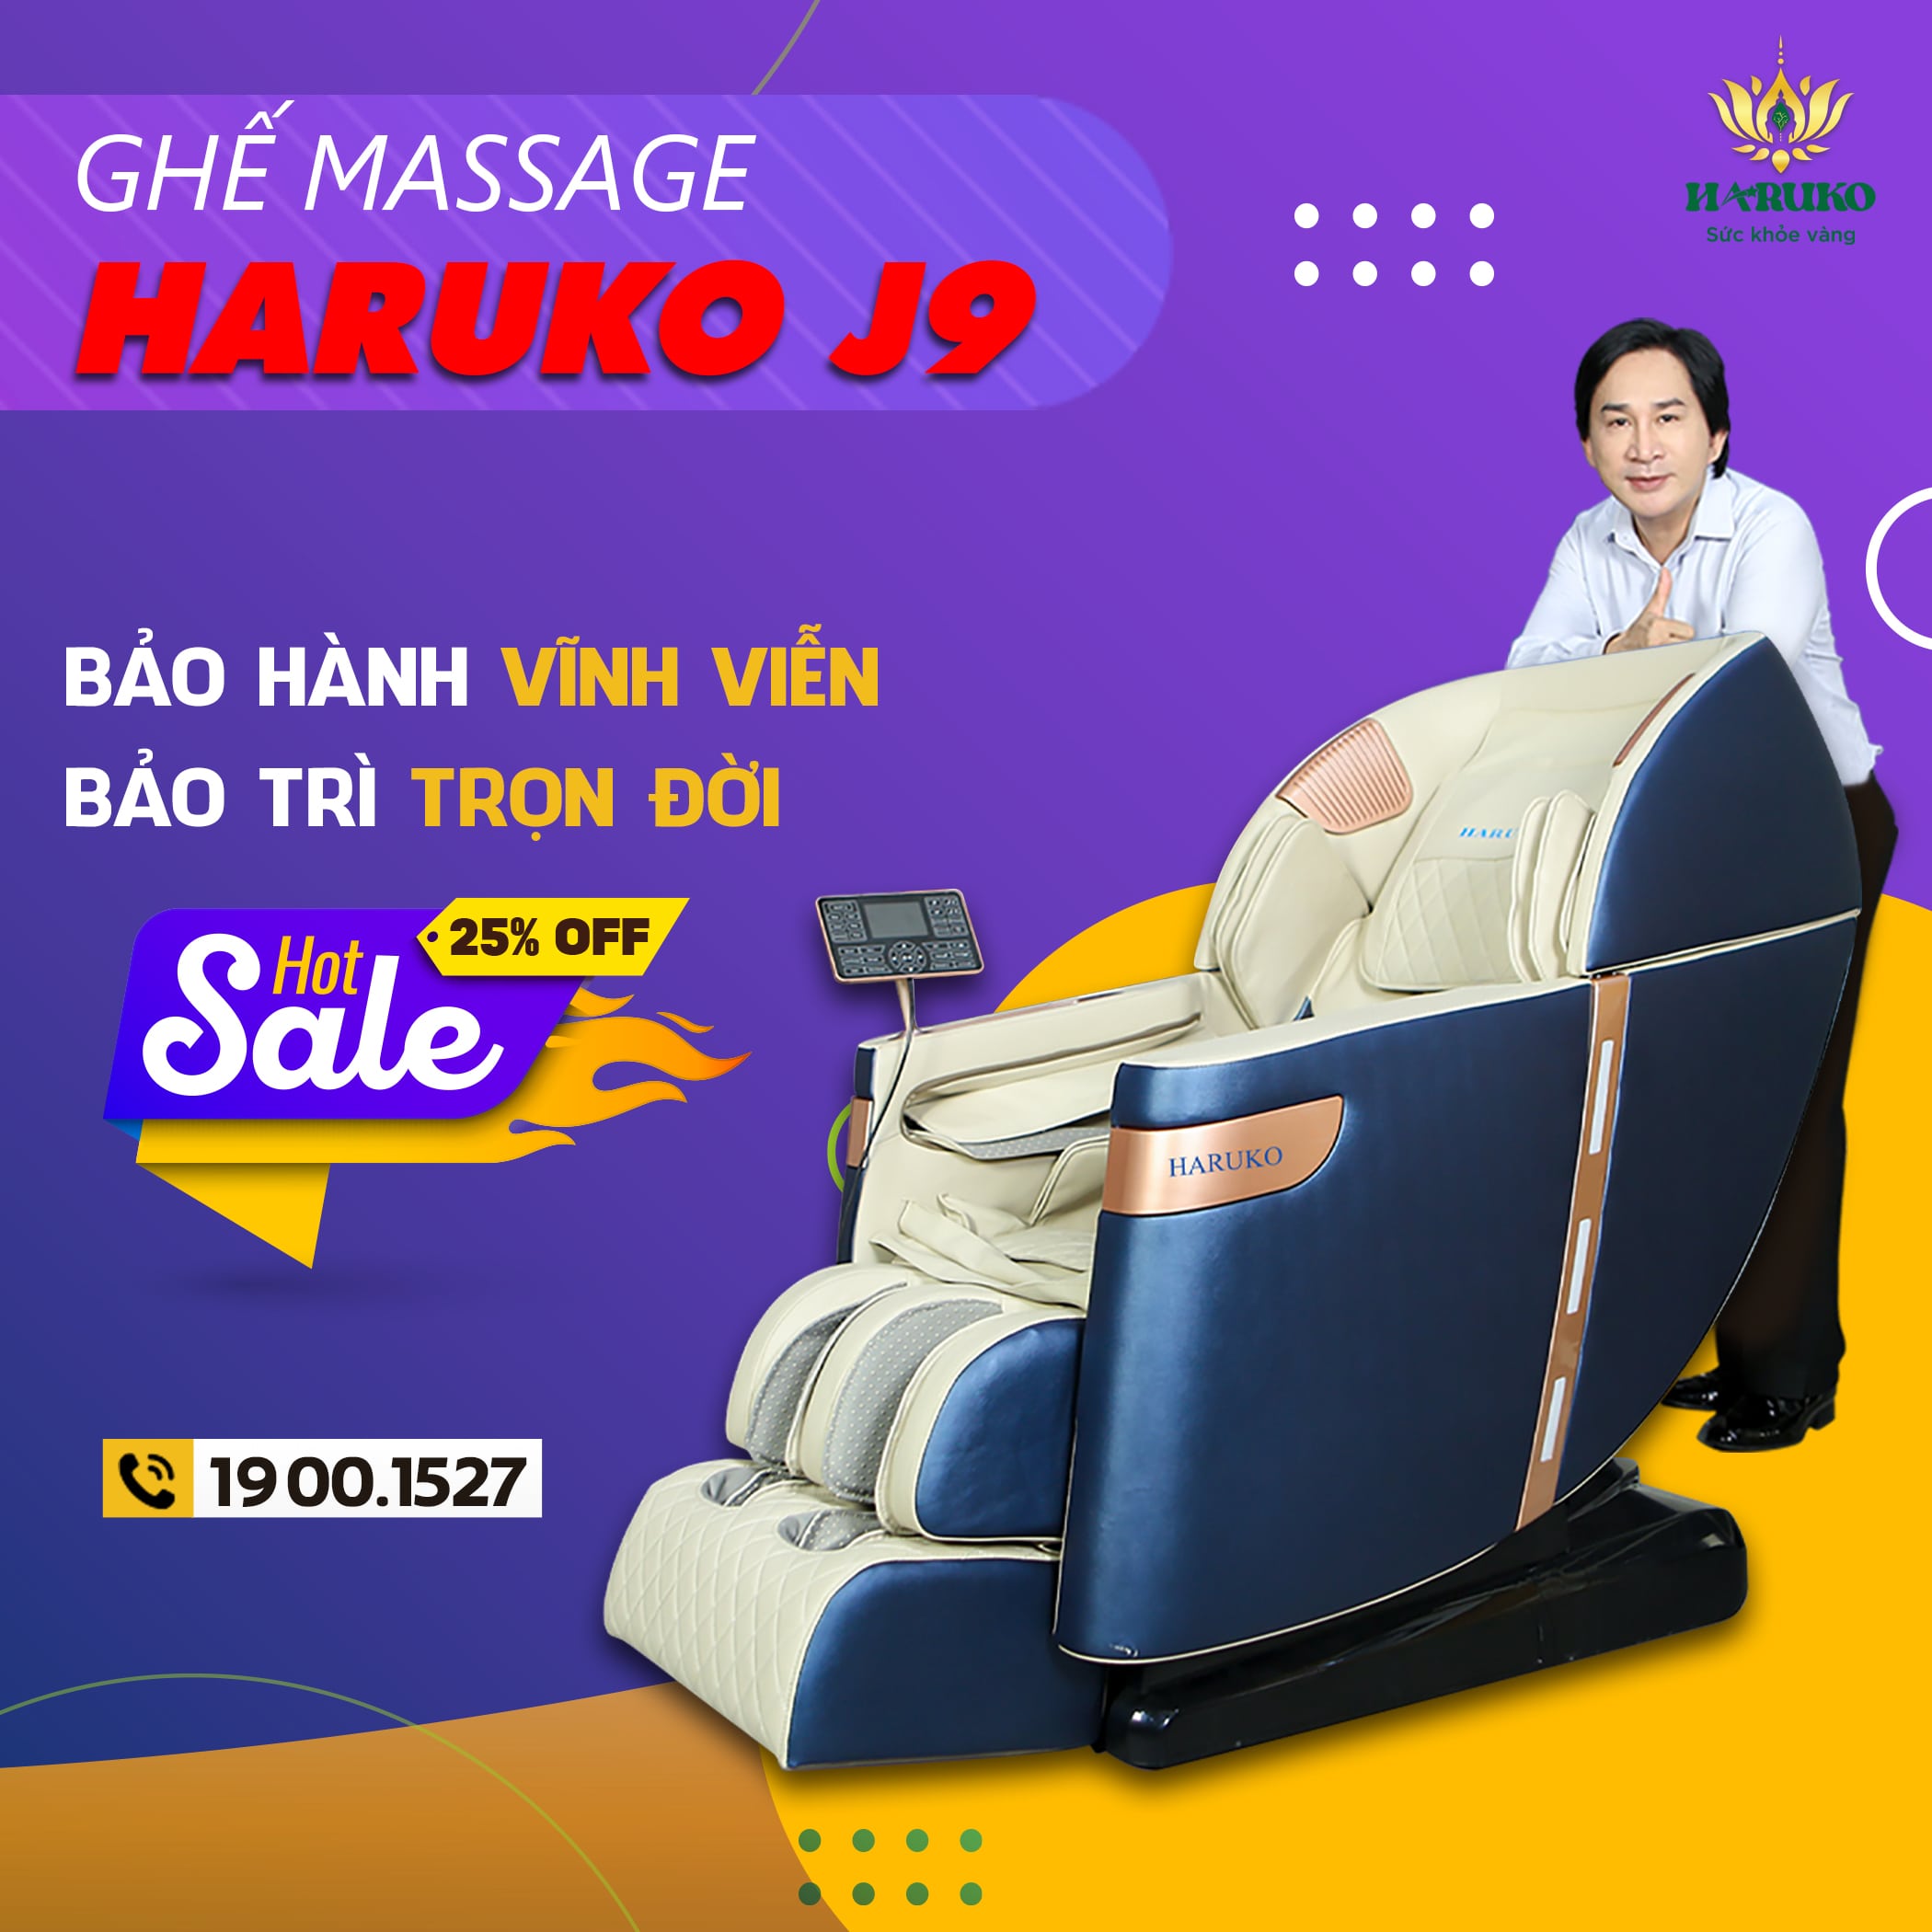 Ghế massage giảm giá khuyến mại luôn là sản phẩm được nhiều khách hàng chọn mua